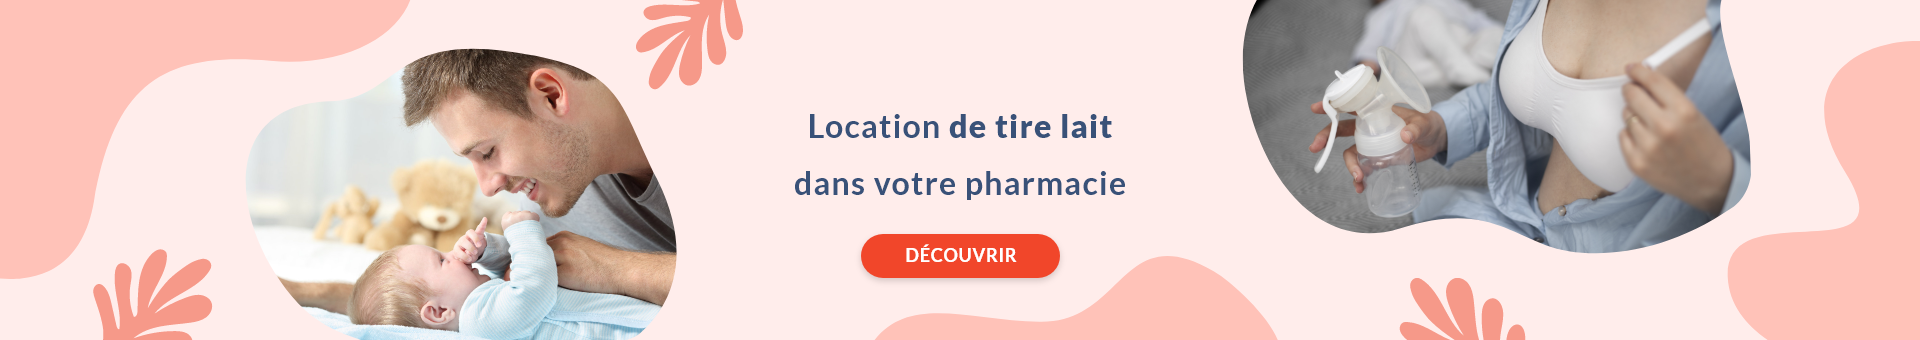 Pharmacie Saint Pierre,TOULOUSE